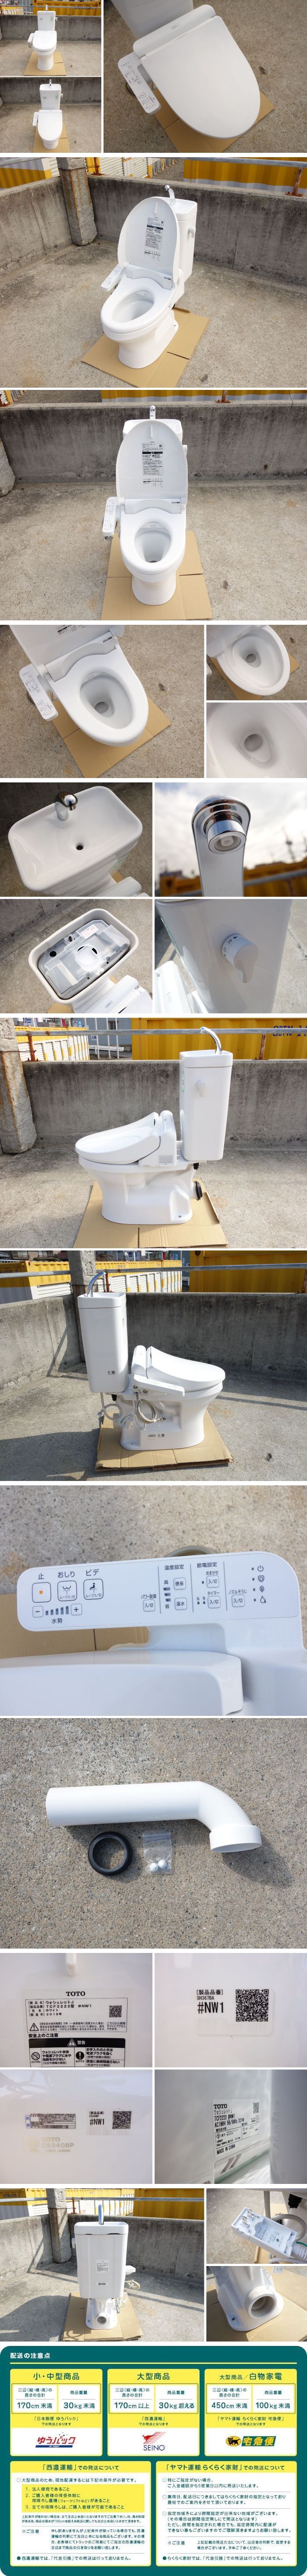 最新作HOTD▼TOTO トイレ ウォシュレット シャワートイレ 便器 便座 タンク 便所 洋式 壁排水 電気便座 手洗いあり 2018年 (30250) 便器